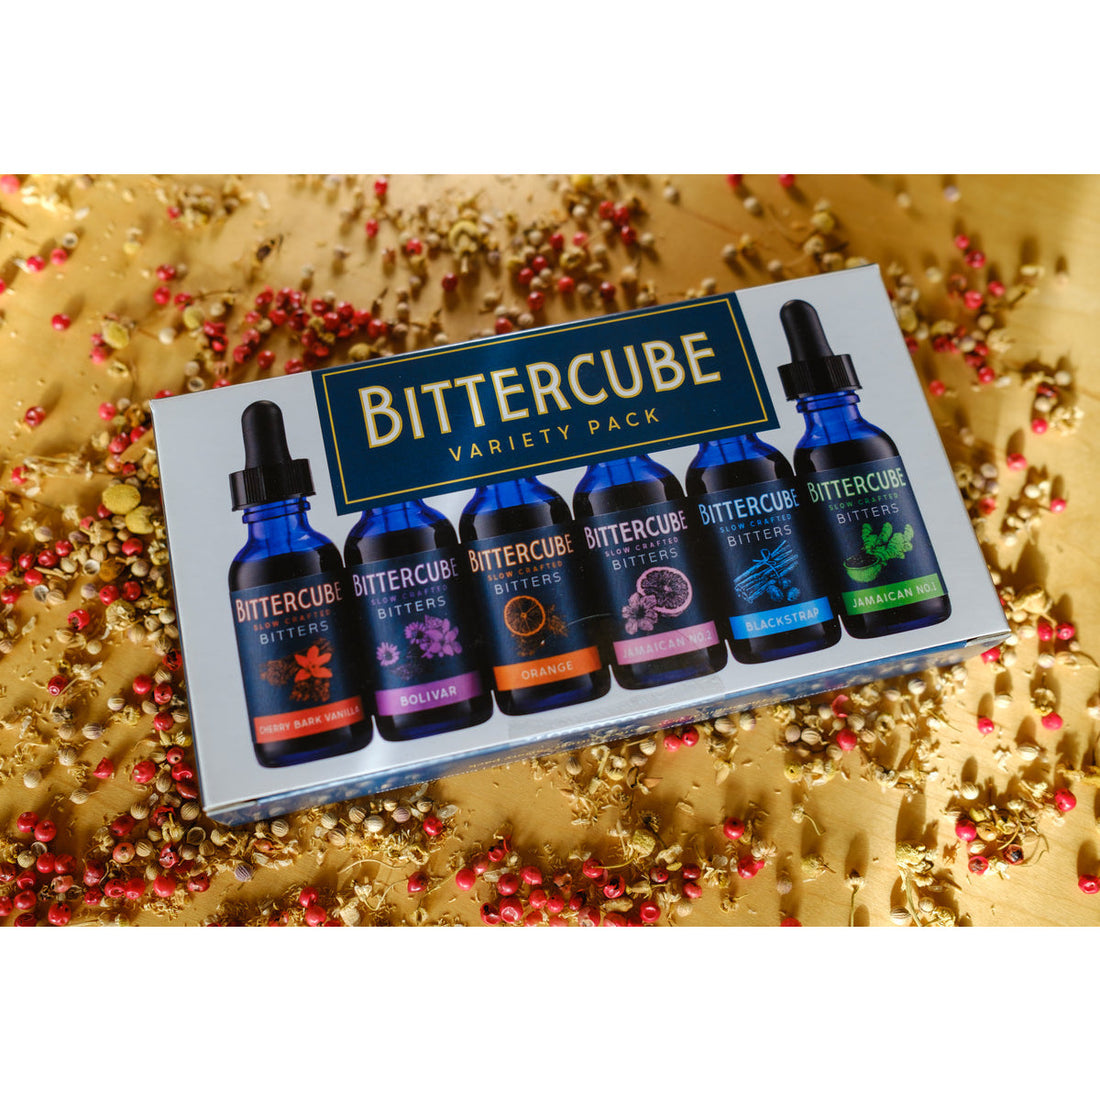 Bittercube Variety Pack